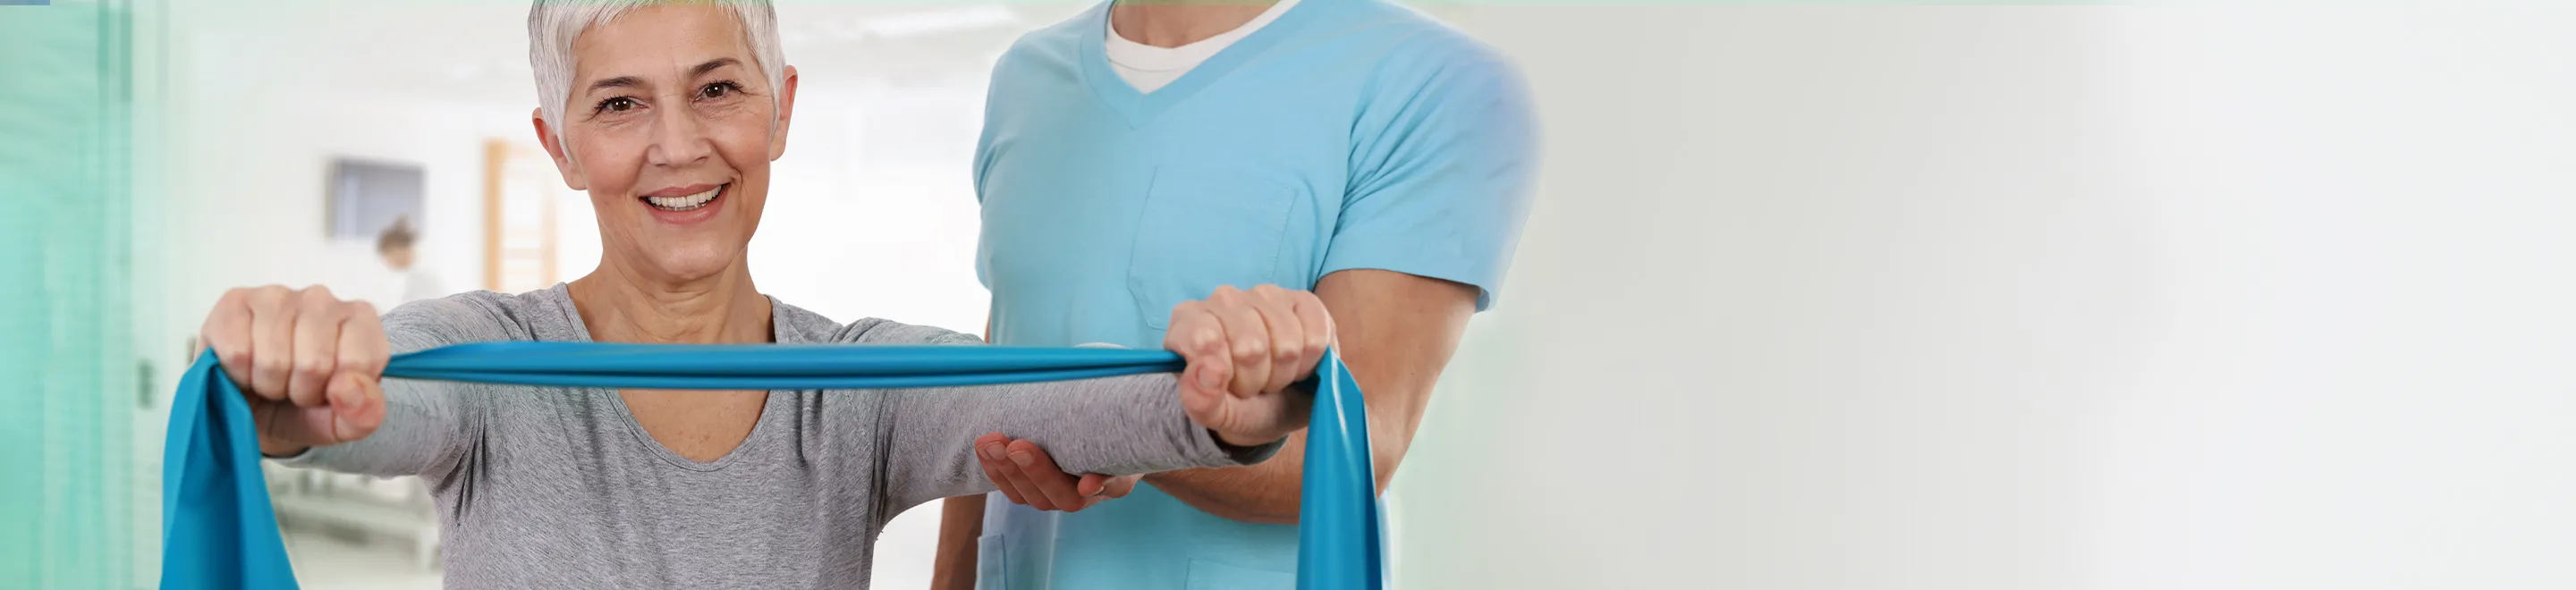 Eine Frau zieht mit beiden Händen an einem blauen Gummiband. Die Übung ist Teil einer Physiotherapie.